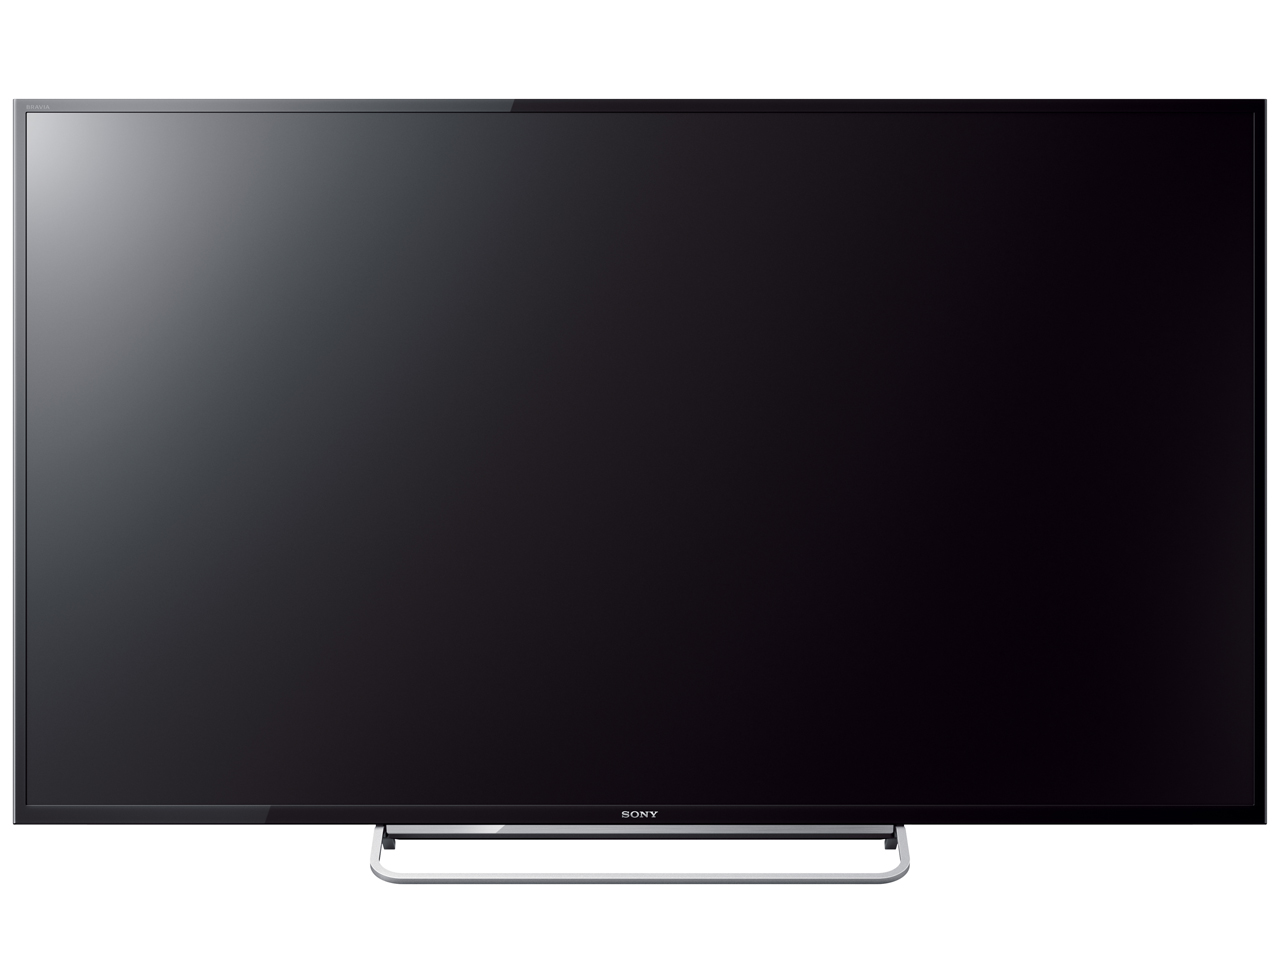 SONY 液晶テレビ KDL-60W600B